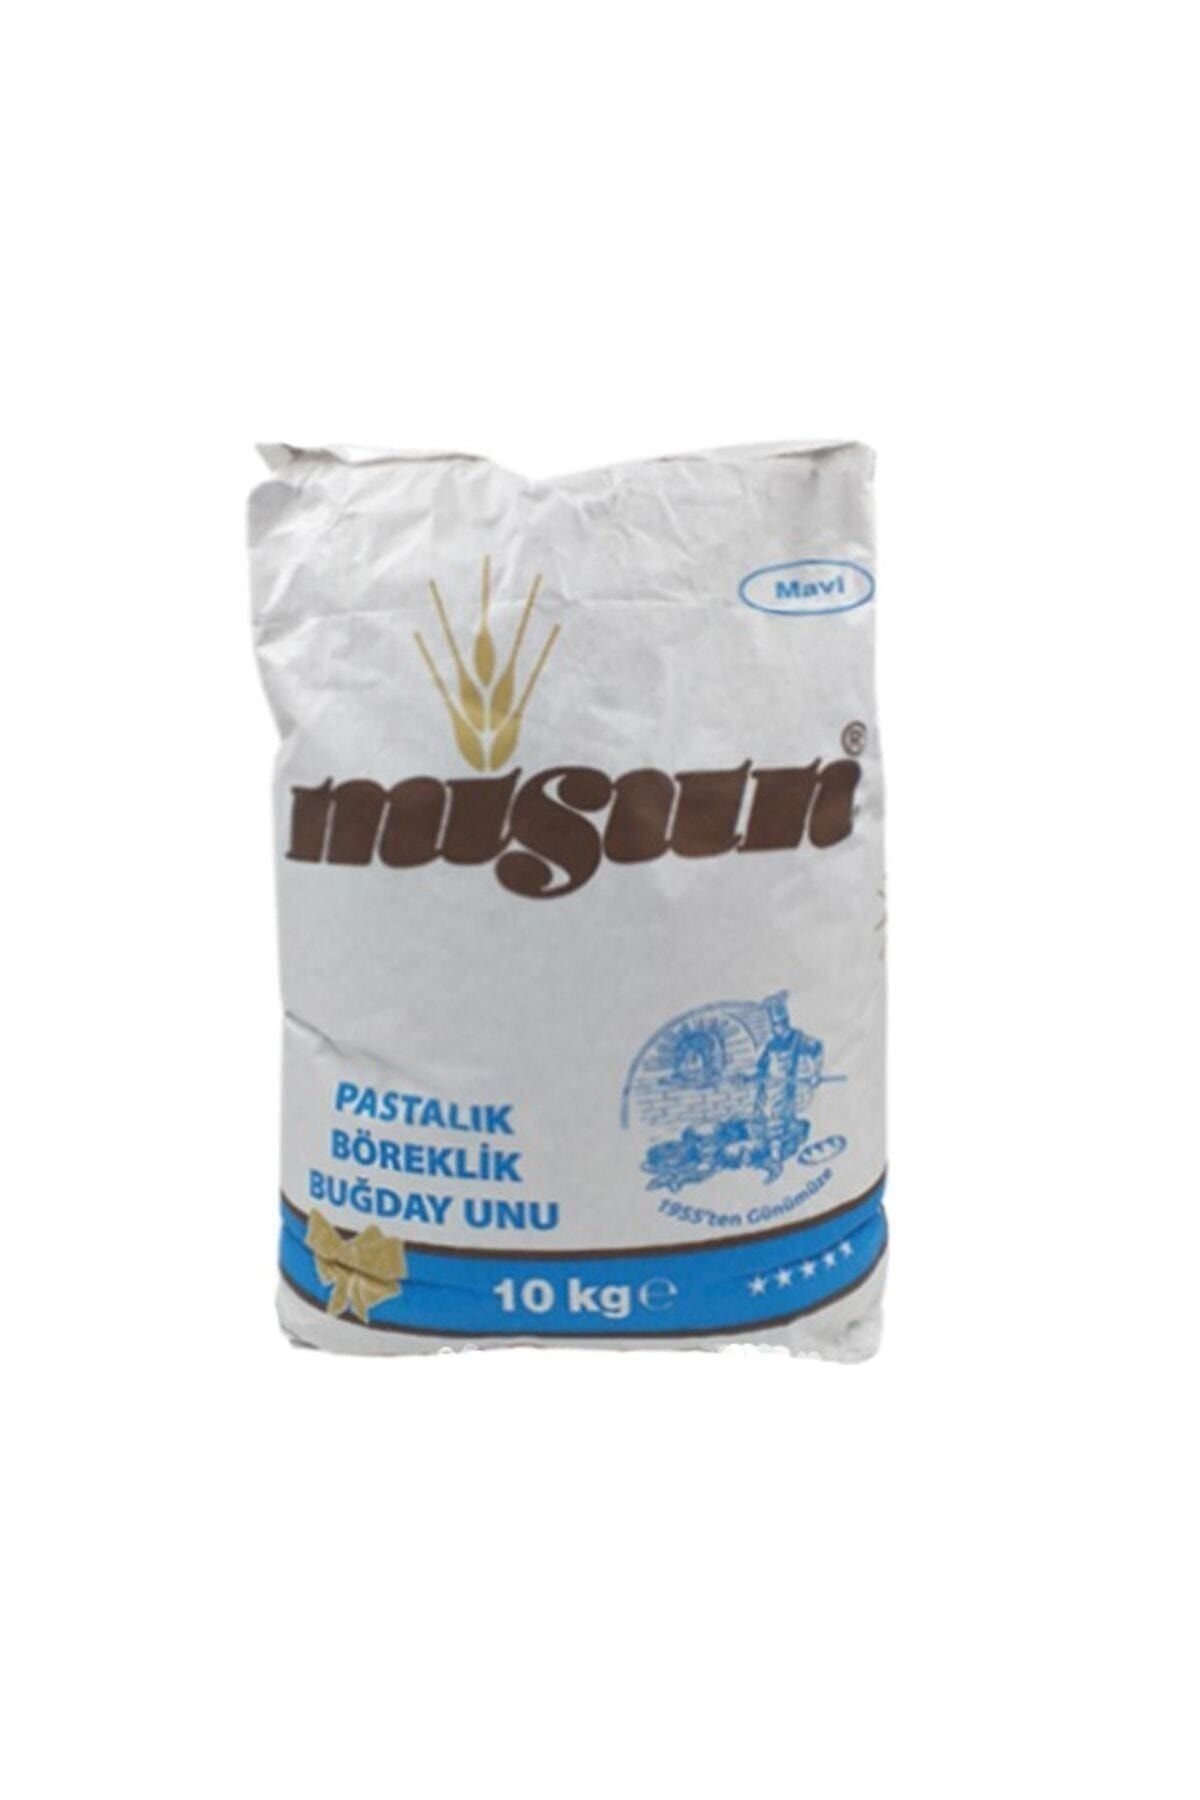 MİS UN Misun Özel Amaçlı Buğday Unu 10 kg